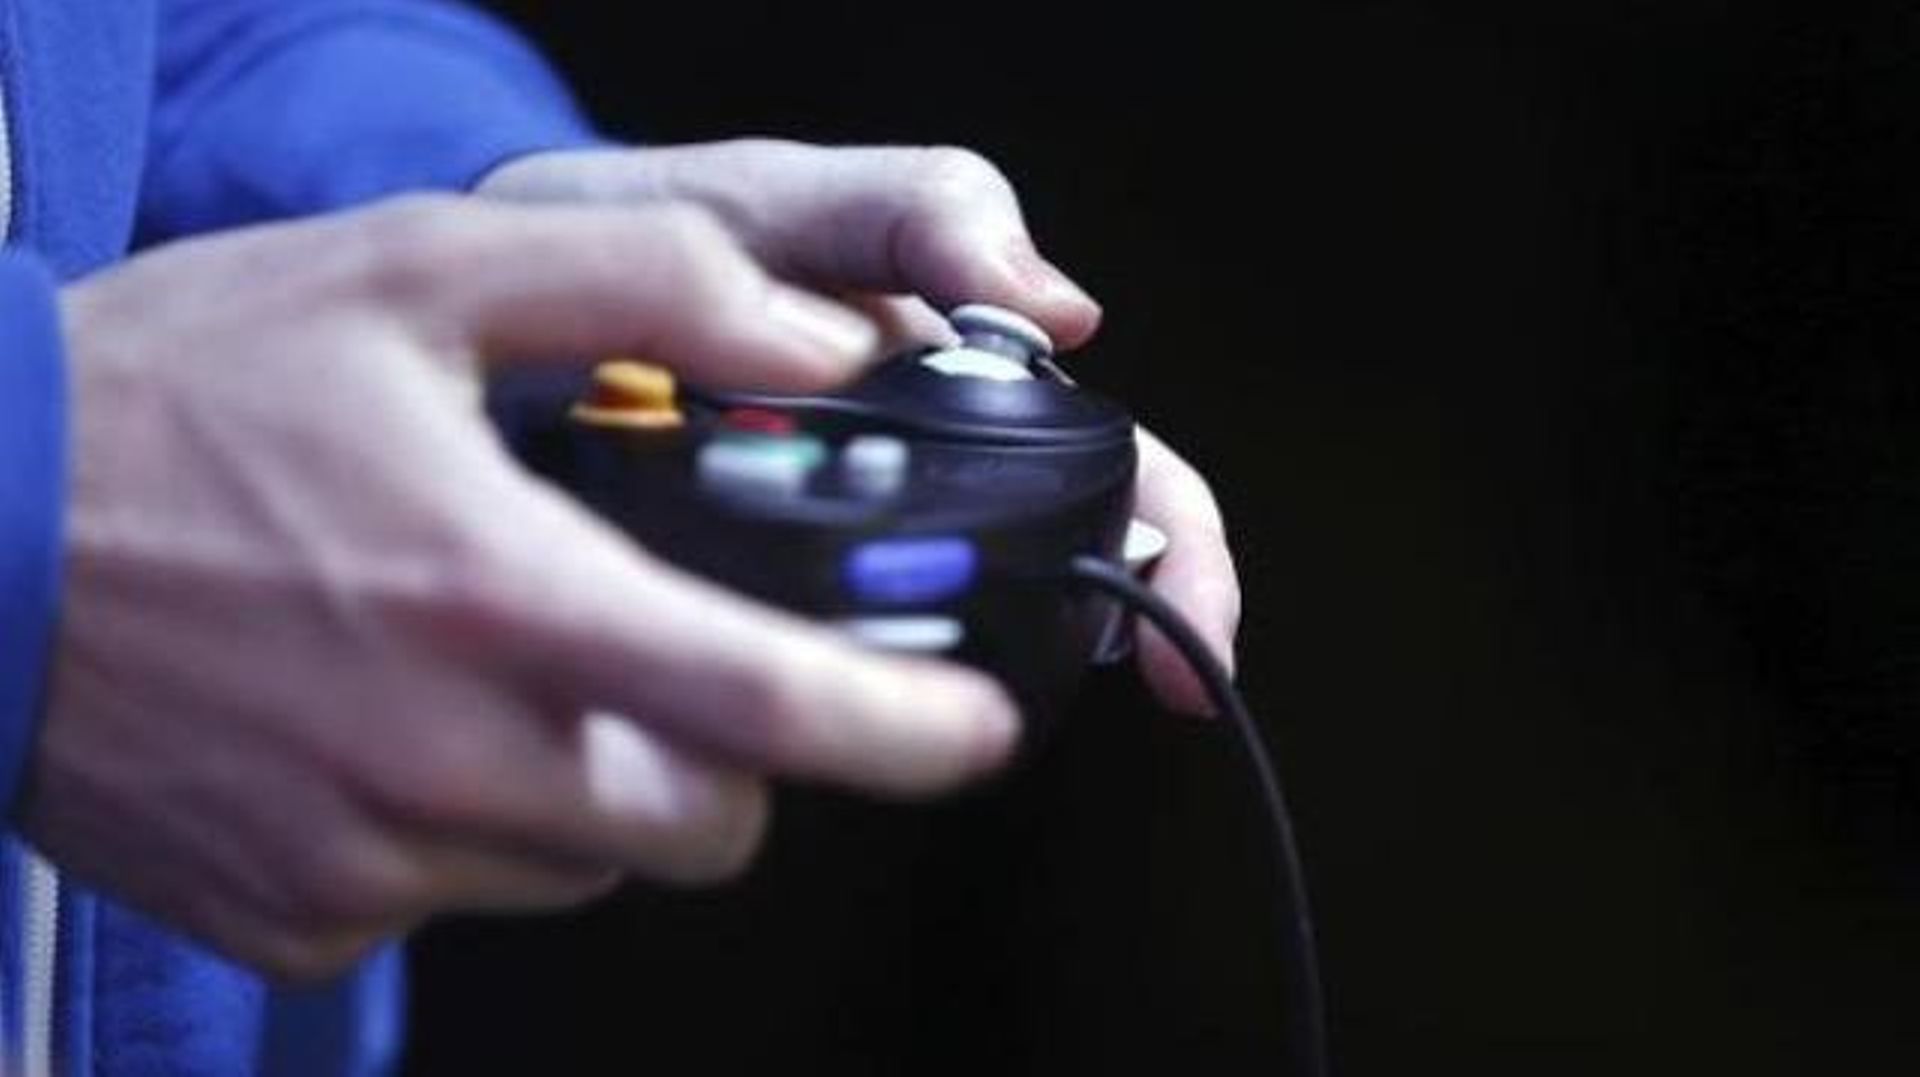 Jouer aux jeux vidéo peut être bon pour la santé mentale